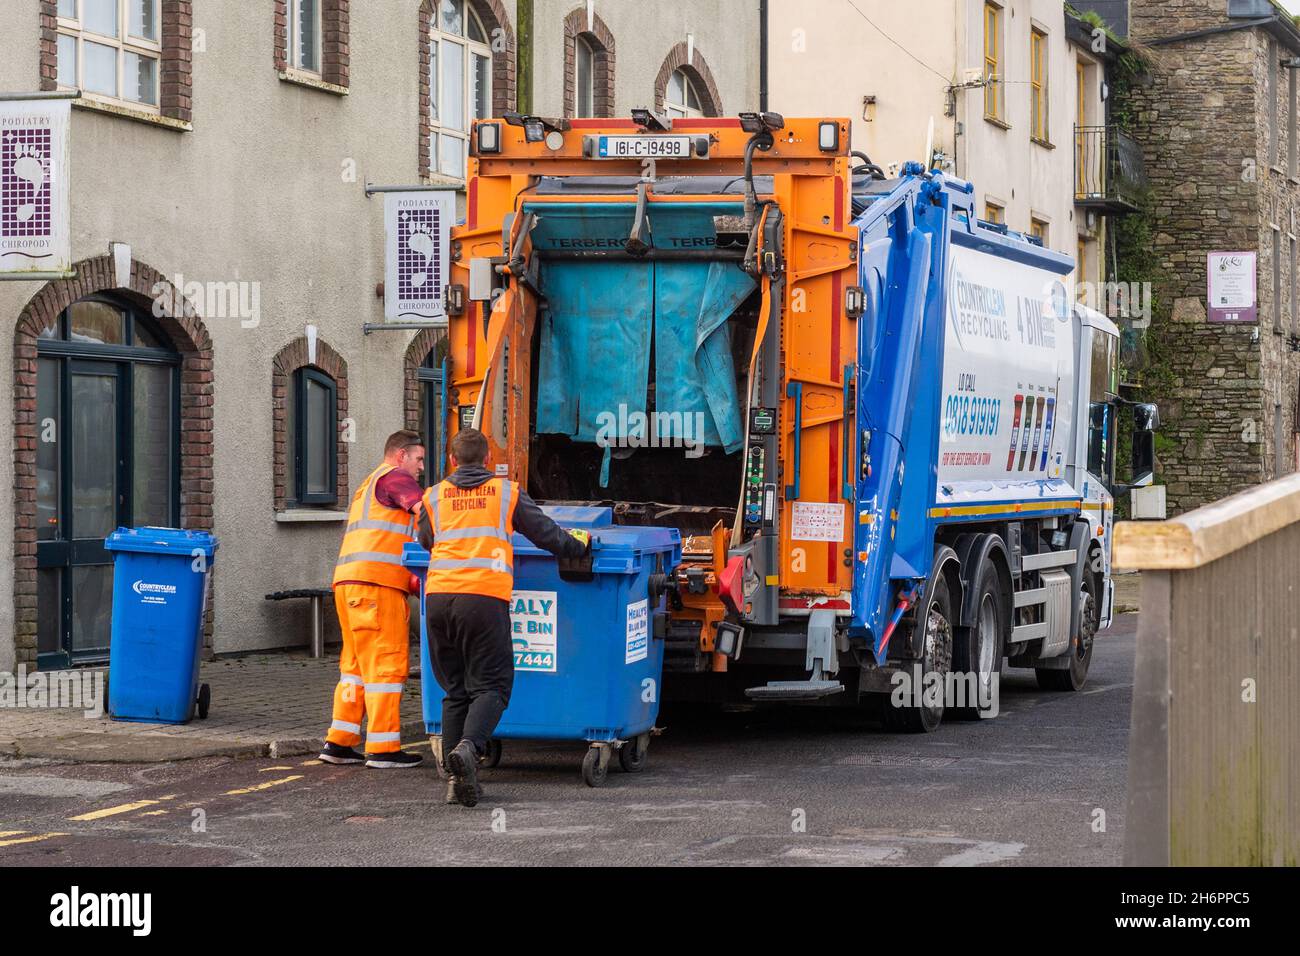 Les bennes vides refusent dans un camion de bennes à Bandon, West Cork, Irlande. Banque D'Images